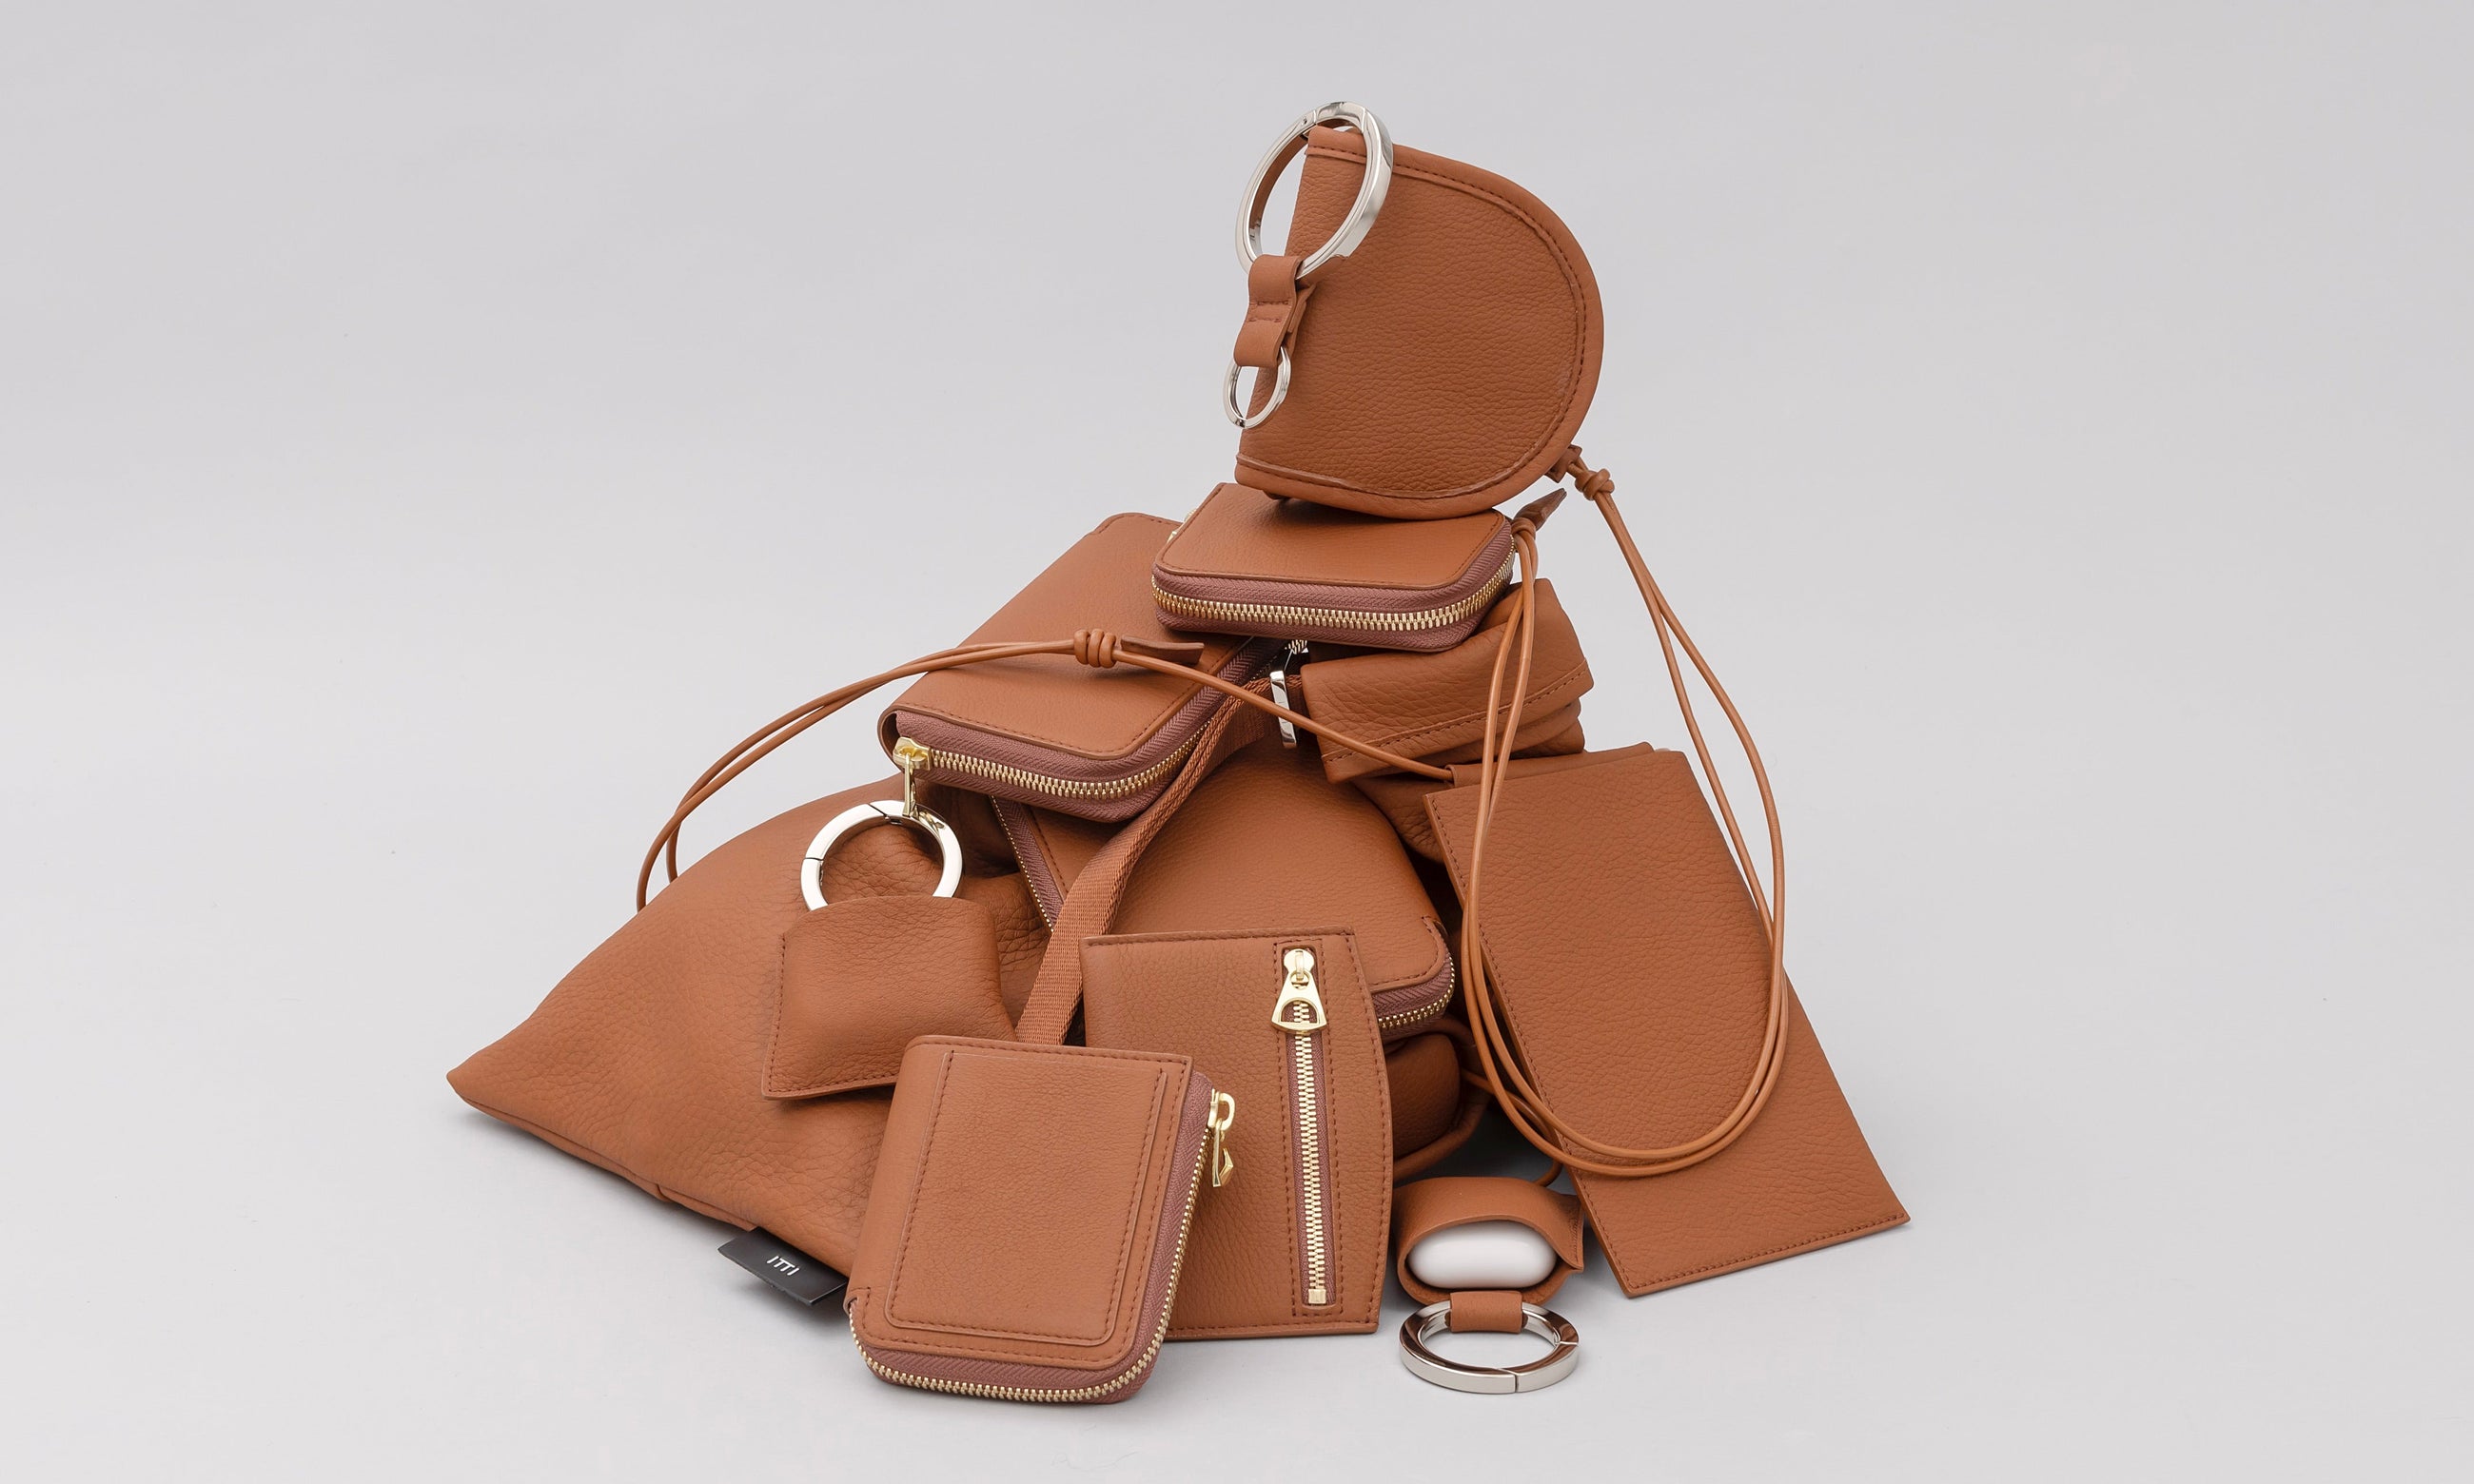 BROWN (ブラウンカラー / 茶色) | COLLECTION (コレクション / 商品一覧) - ITTI (イッチ) | レザーブランド 革小物 財布・サイフ・さいふ バッグ・カバン・鞄・かばん グッズ メンズ レディース